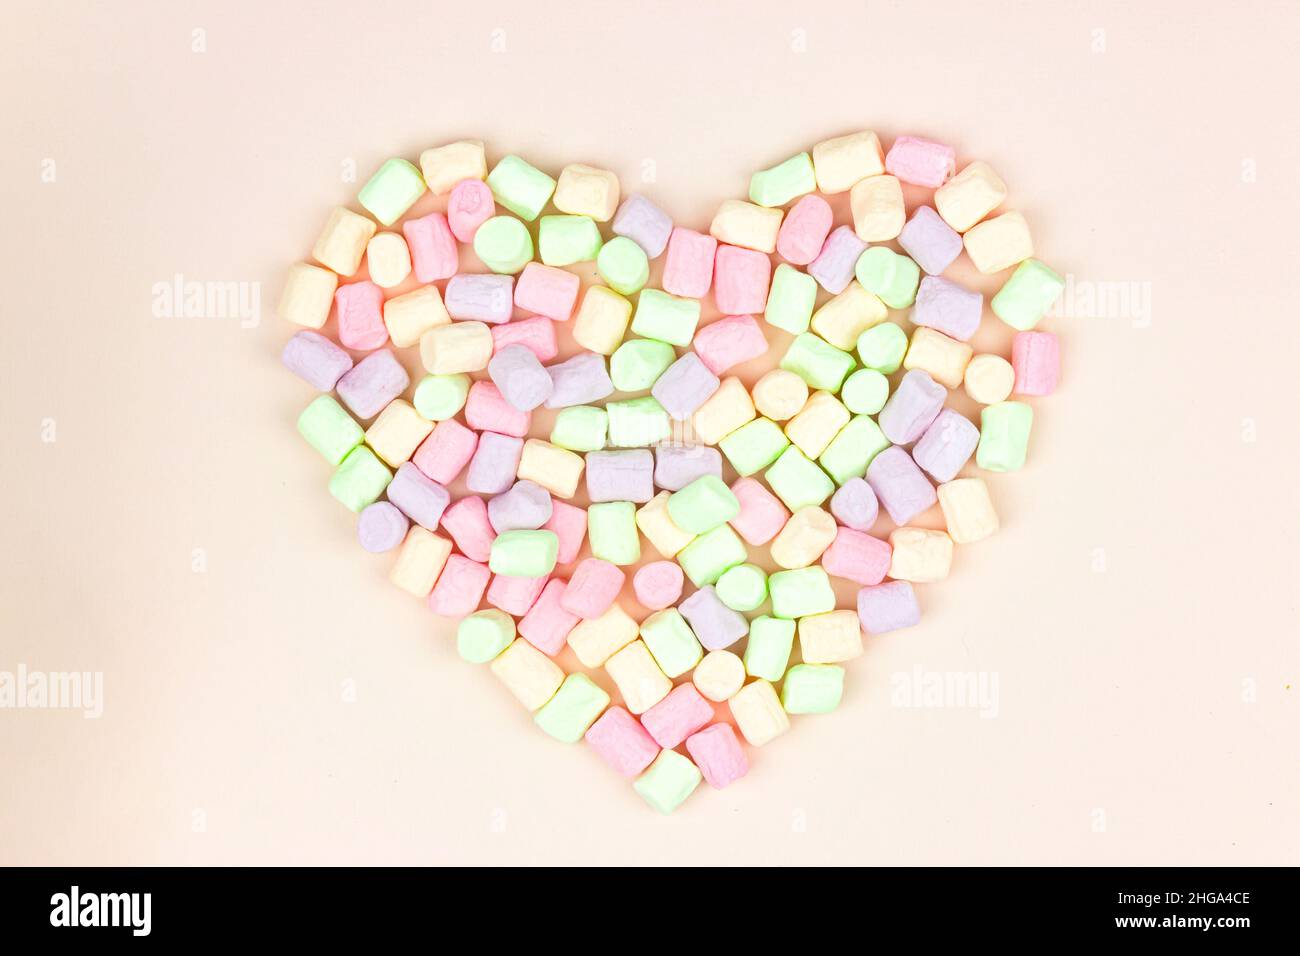 Guimauve multicolore pastel en forme de coeur sur fond rose pastel.La nourriture.Concept de fêtes et de célébrations. Banque D'Images